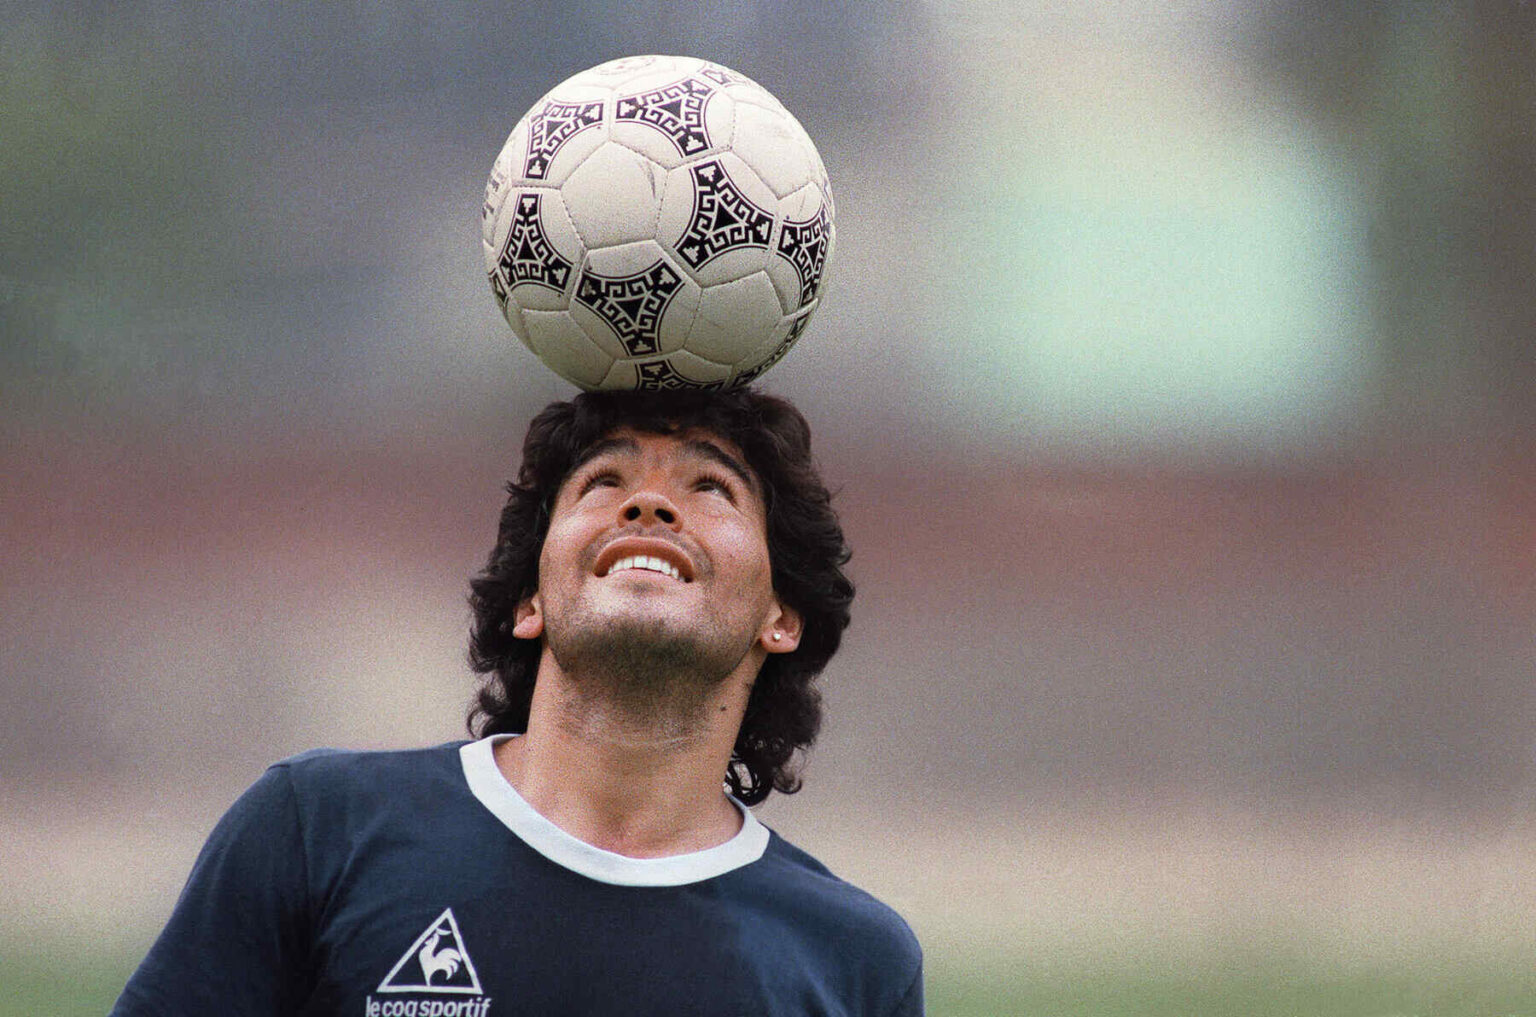 Adiós a La Mano de Dios. Entérate de todos los detalles que conocemos acerca de la muerte de Diego Maradona.